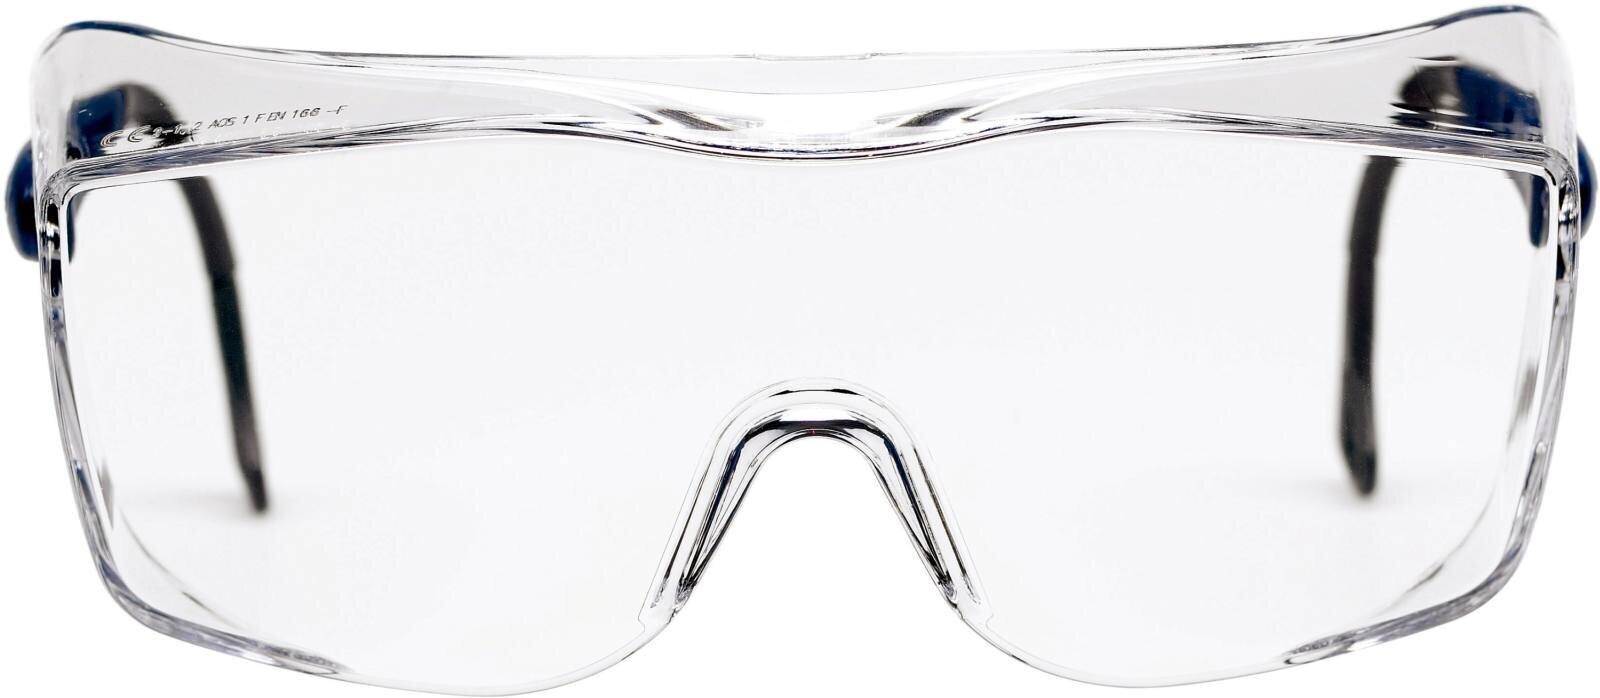 3M OX2000 sur-lunettes, revêtement anti-rayures/anti-buée, écran transparent, 17-5118-2040